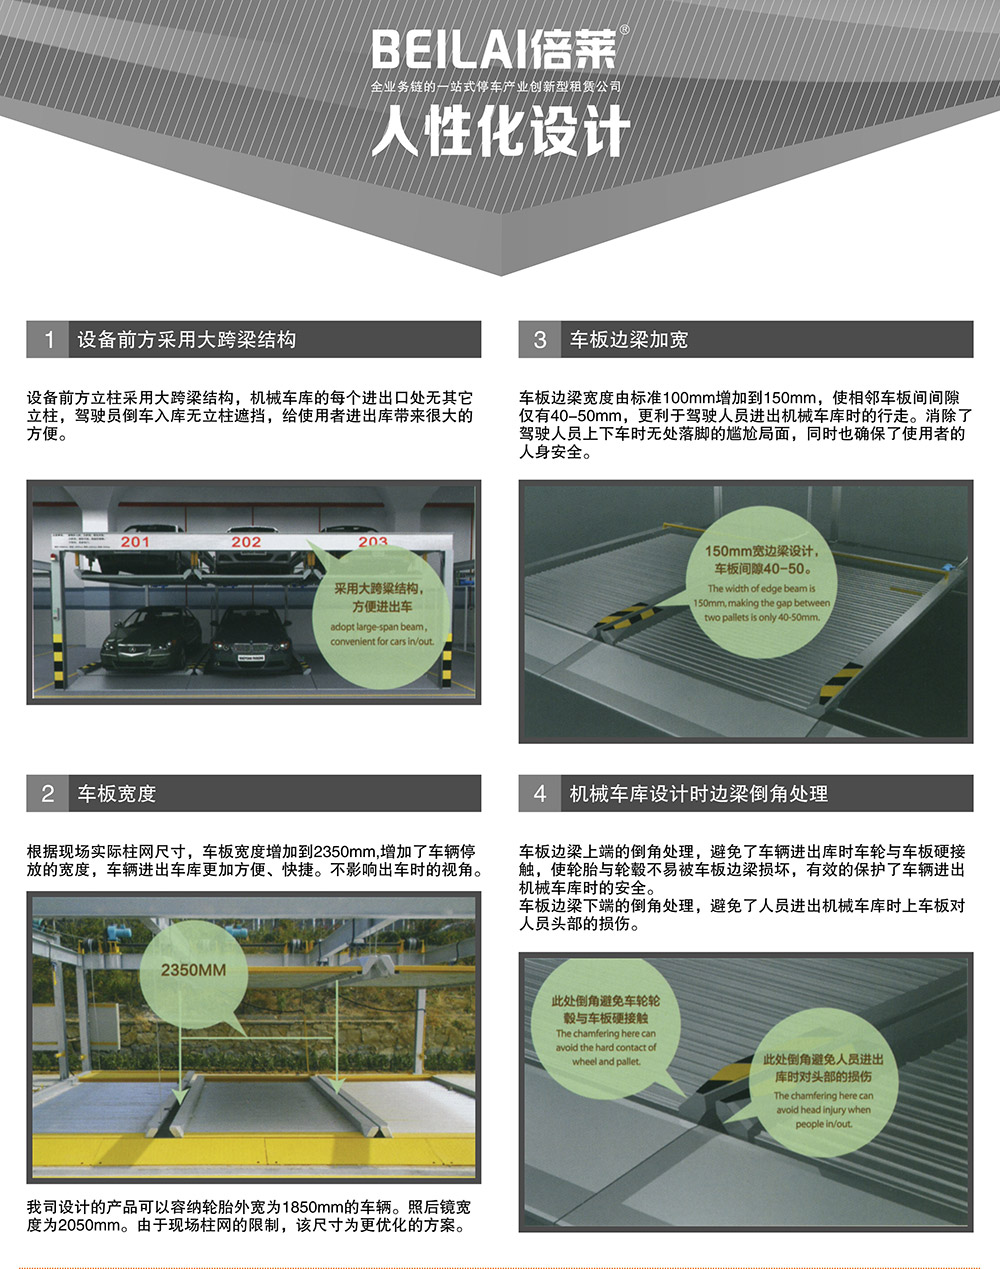 四川成都四至六层PSH4-6升降横移式立体停车设备人性化设计.jpg